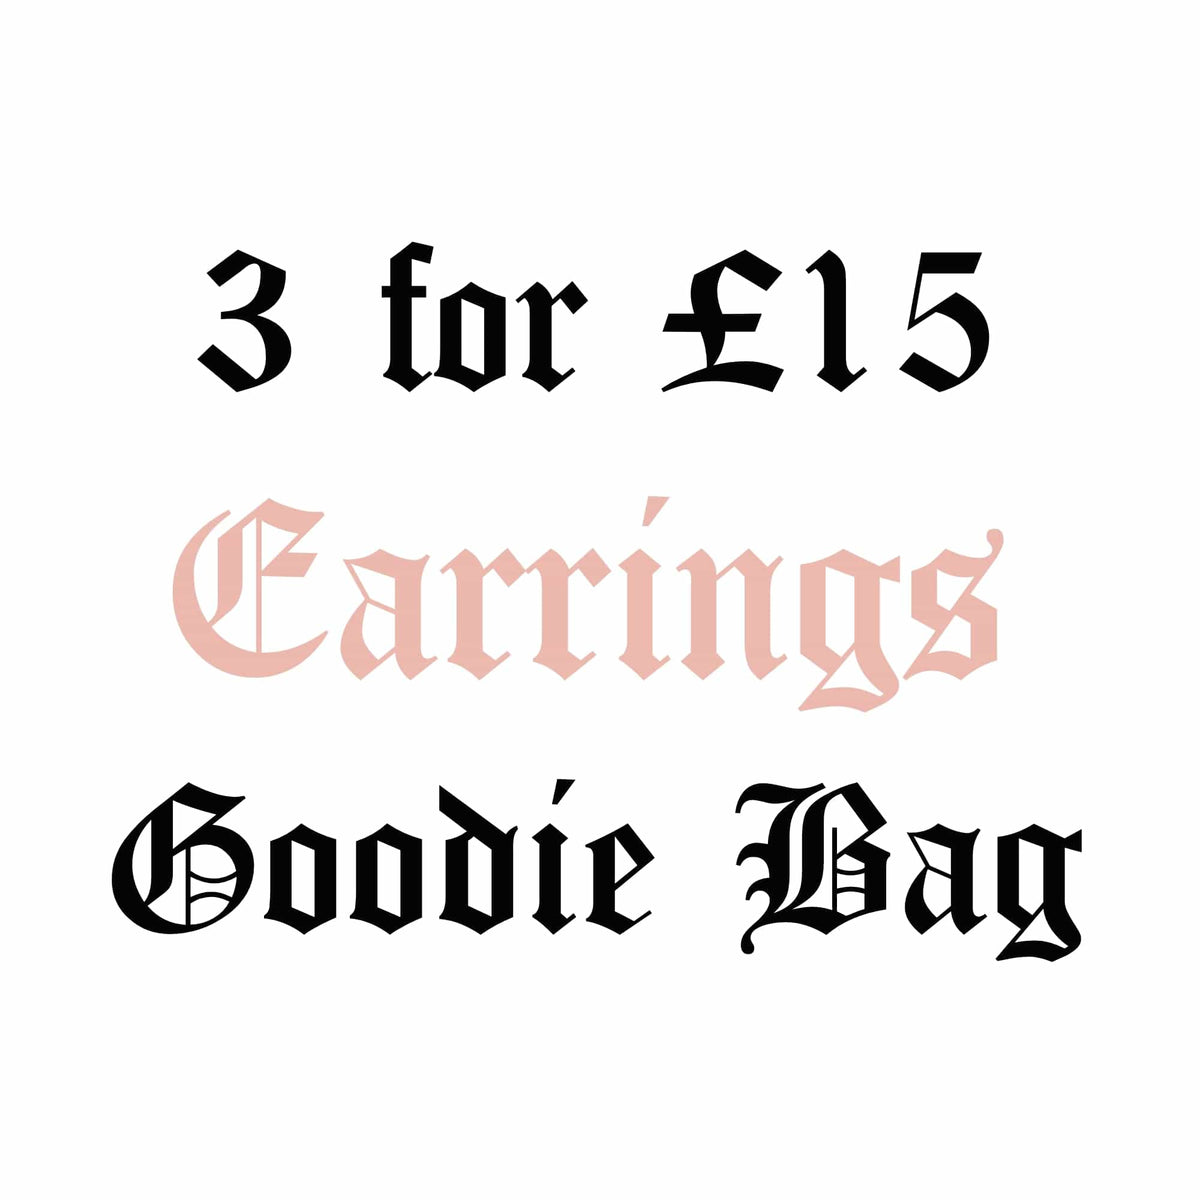 BOHOMOON Stainless Steel 3 for £15 Goodie Bag - Earrings